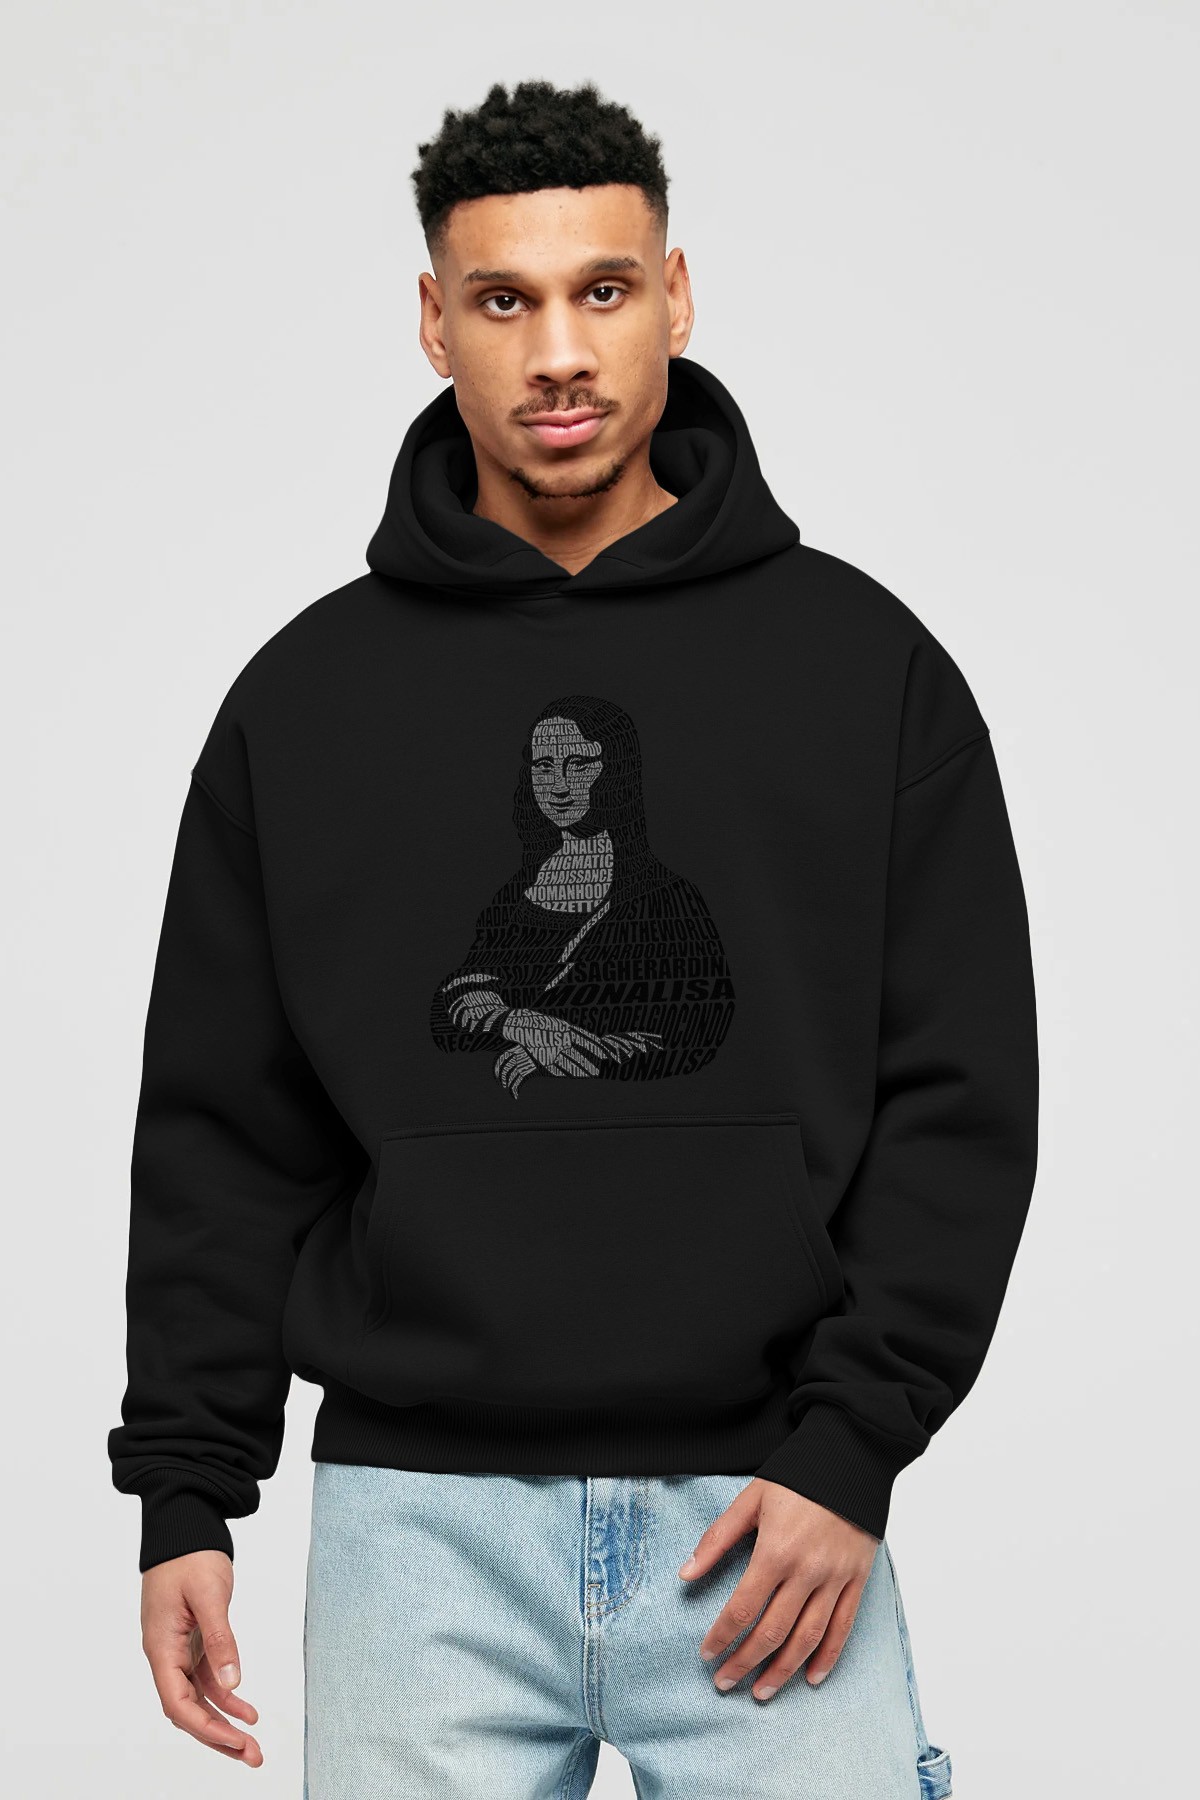 Mona Lisa Calligram Ön Baskılı Hoodie Oversize Kapüşonlu Sweatshirt Erkek Kadın Unisex